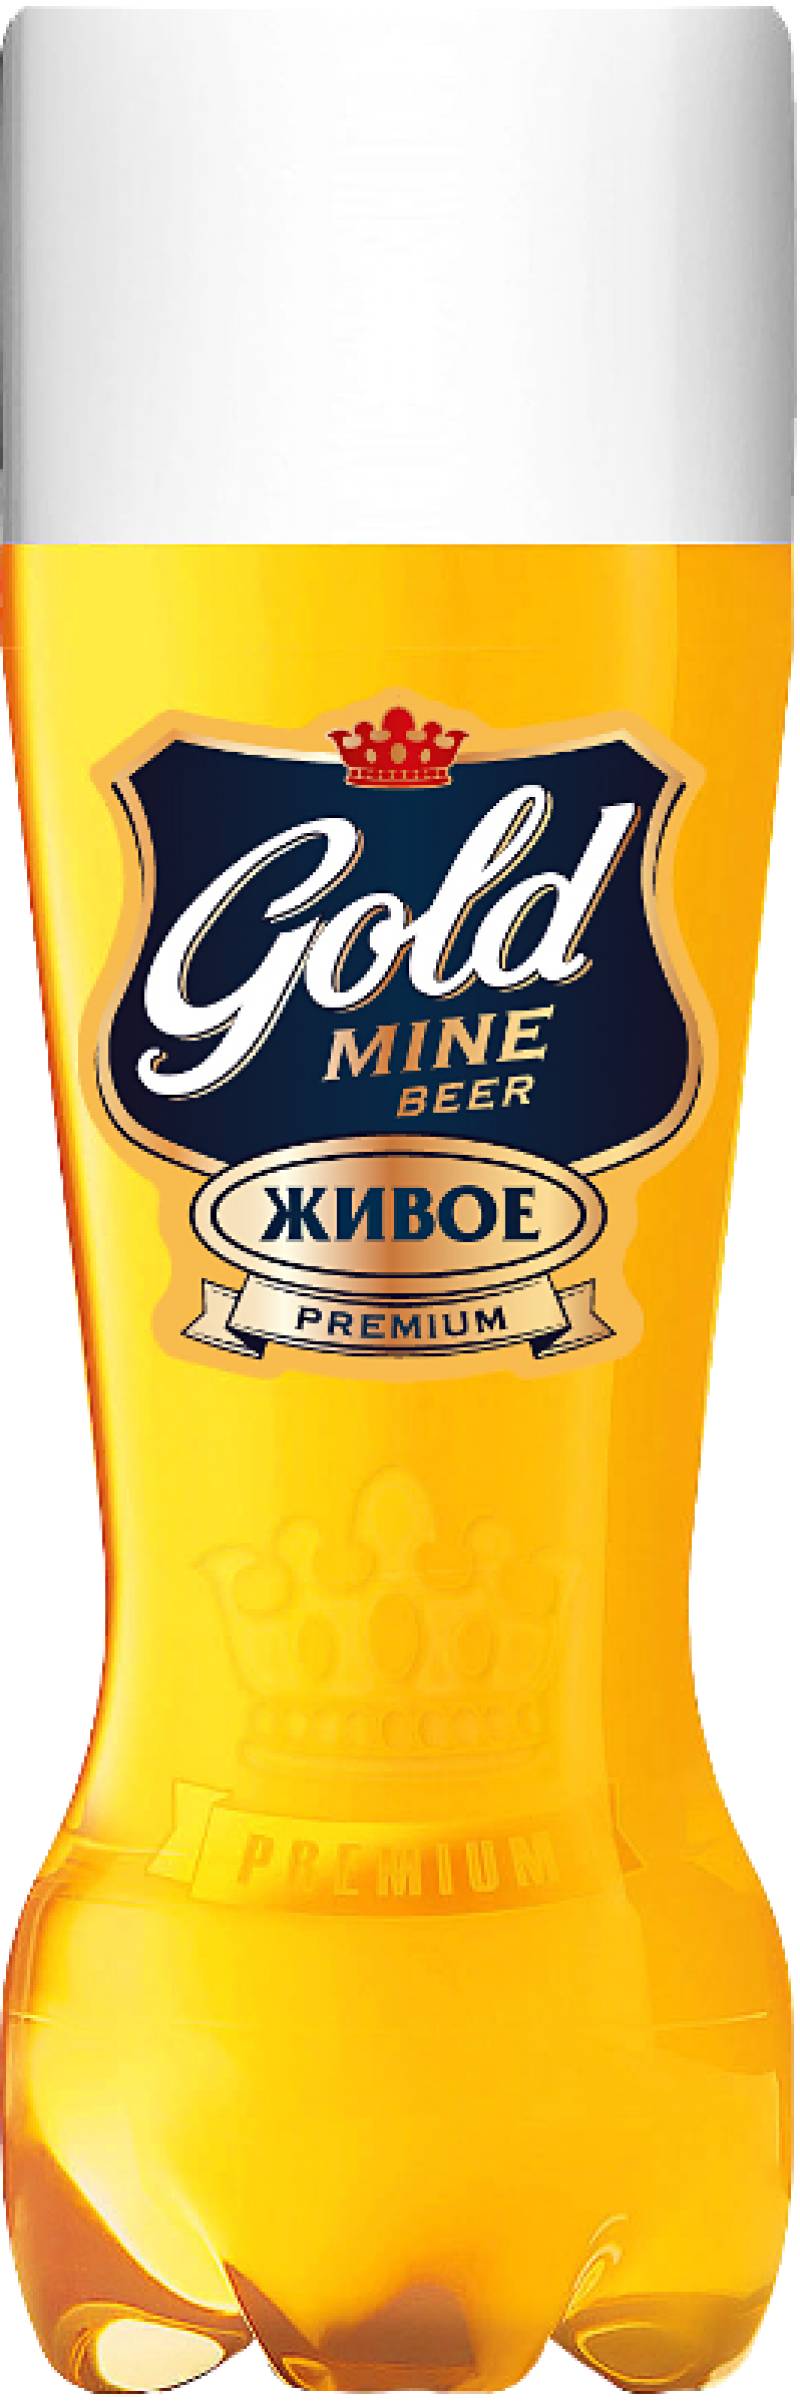 Пиво Gold Mine Beer  Premium (живое) 1,35 л. (Россия)